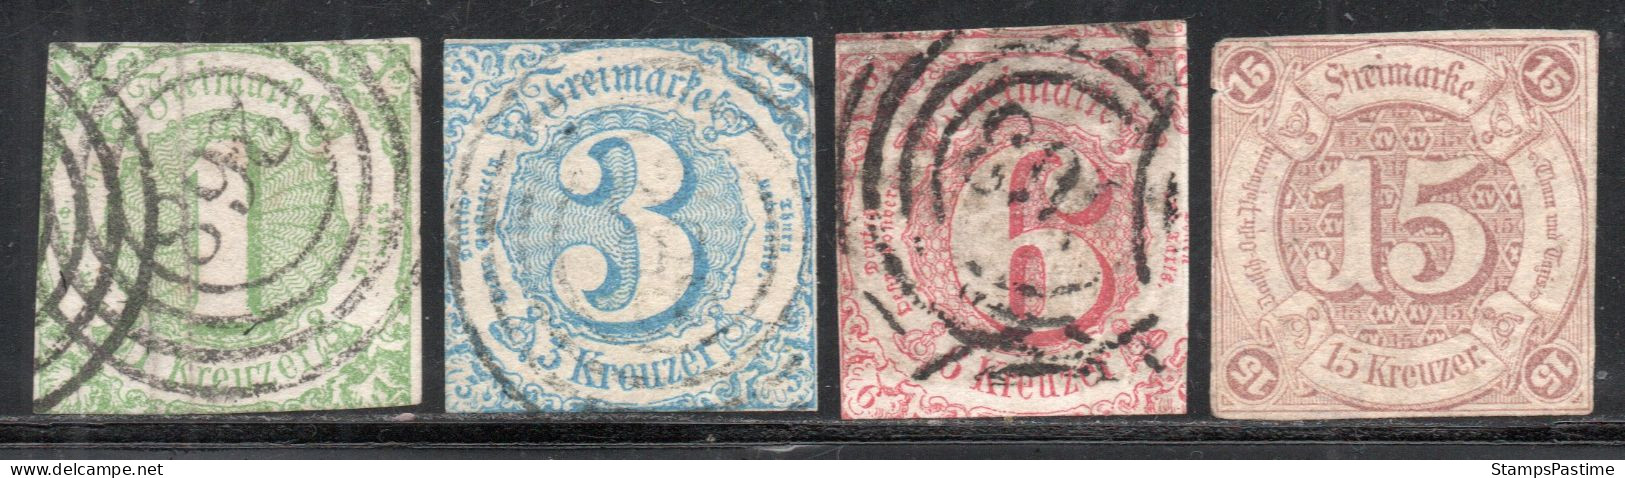 ALEMANIA – THURN Y TAXIS SUR Serie No Completa X 4 Sellos Usados CIFRAS Año 1859 – Valorizada En Catálogo € 104,25 - Gebraucht